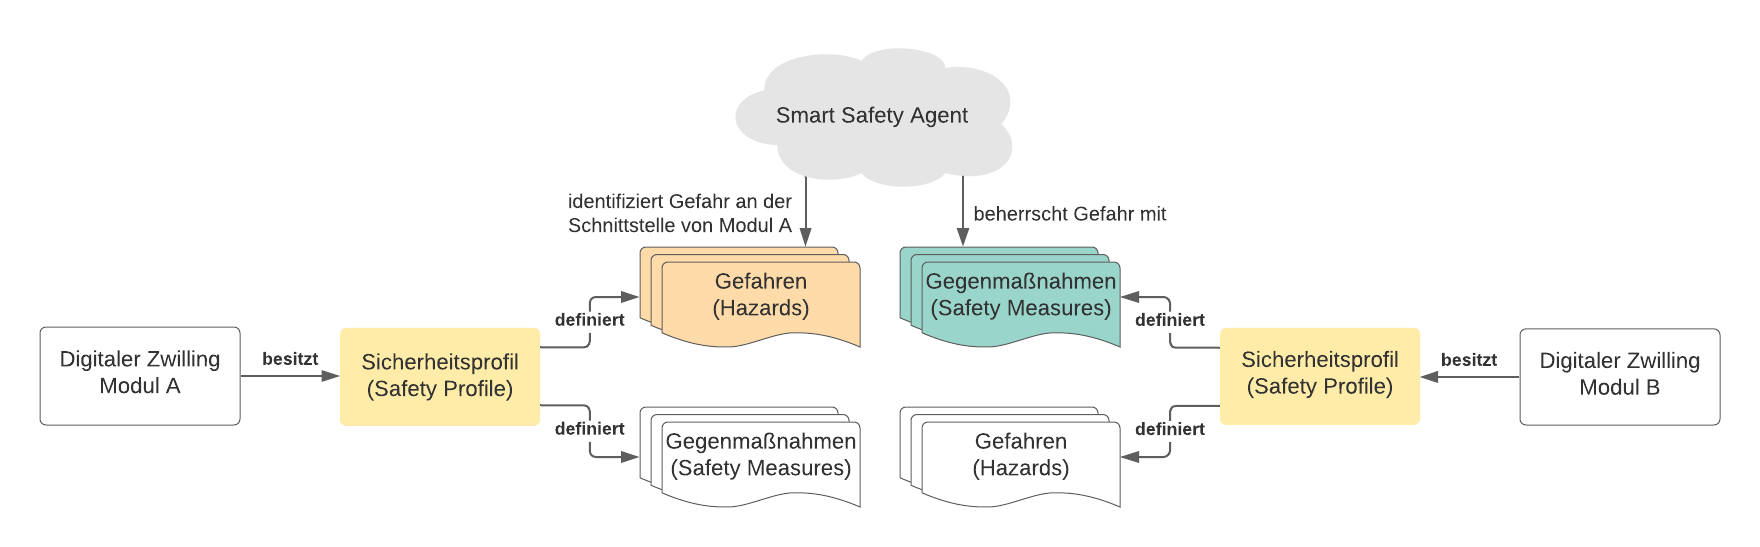 Der Smart-Safety-Agent muss je nach Umgebung verschiedene Schutzmaßnahmen unterscheiden und anwenden können.